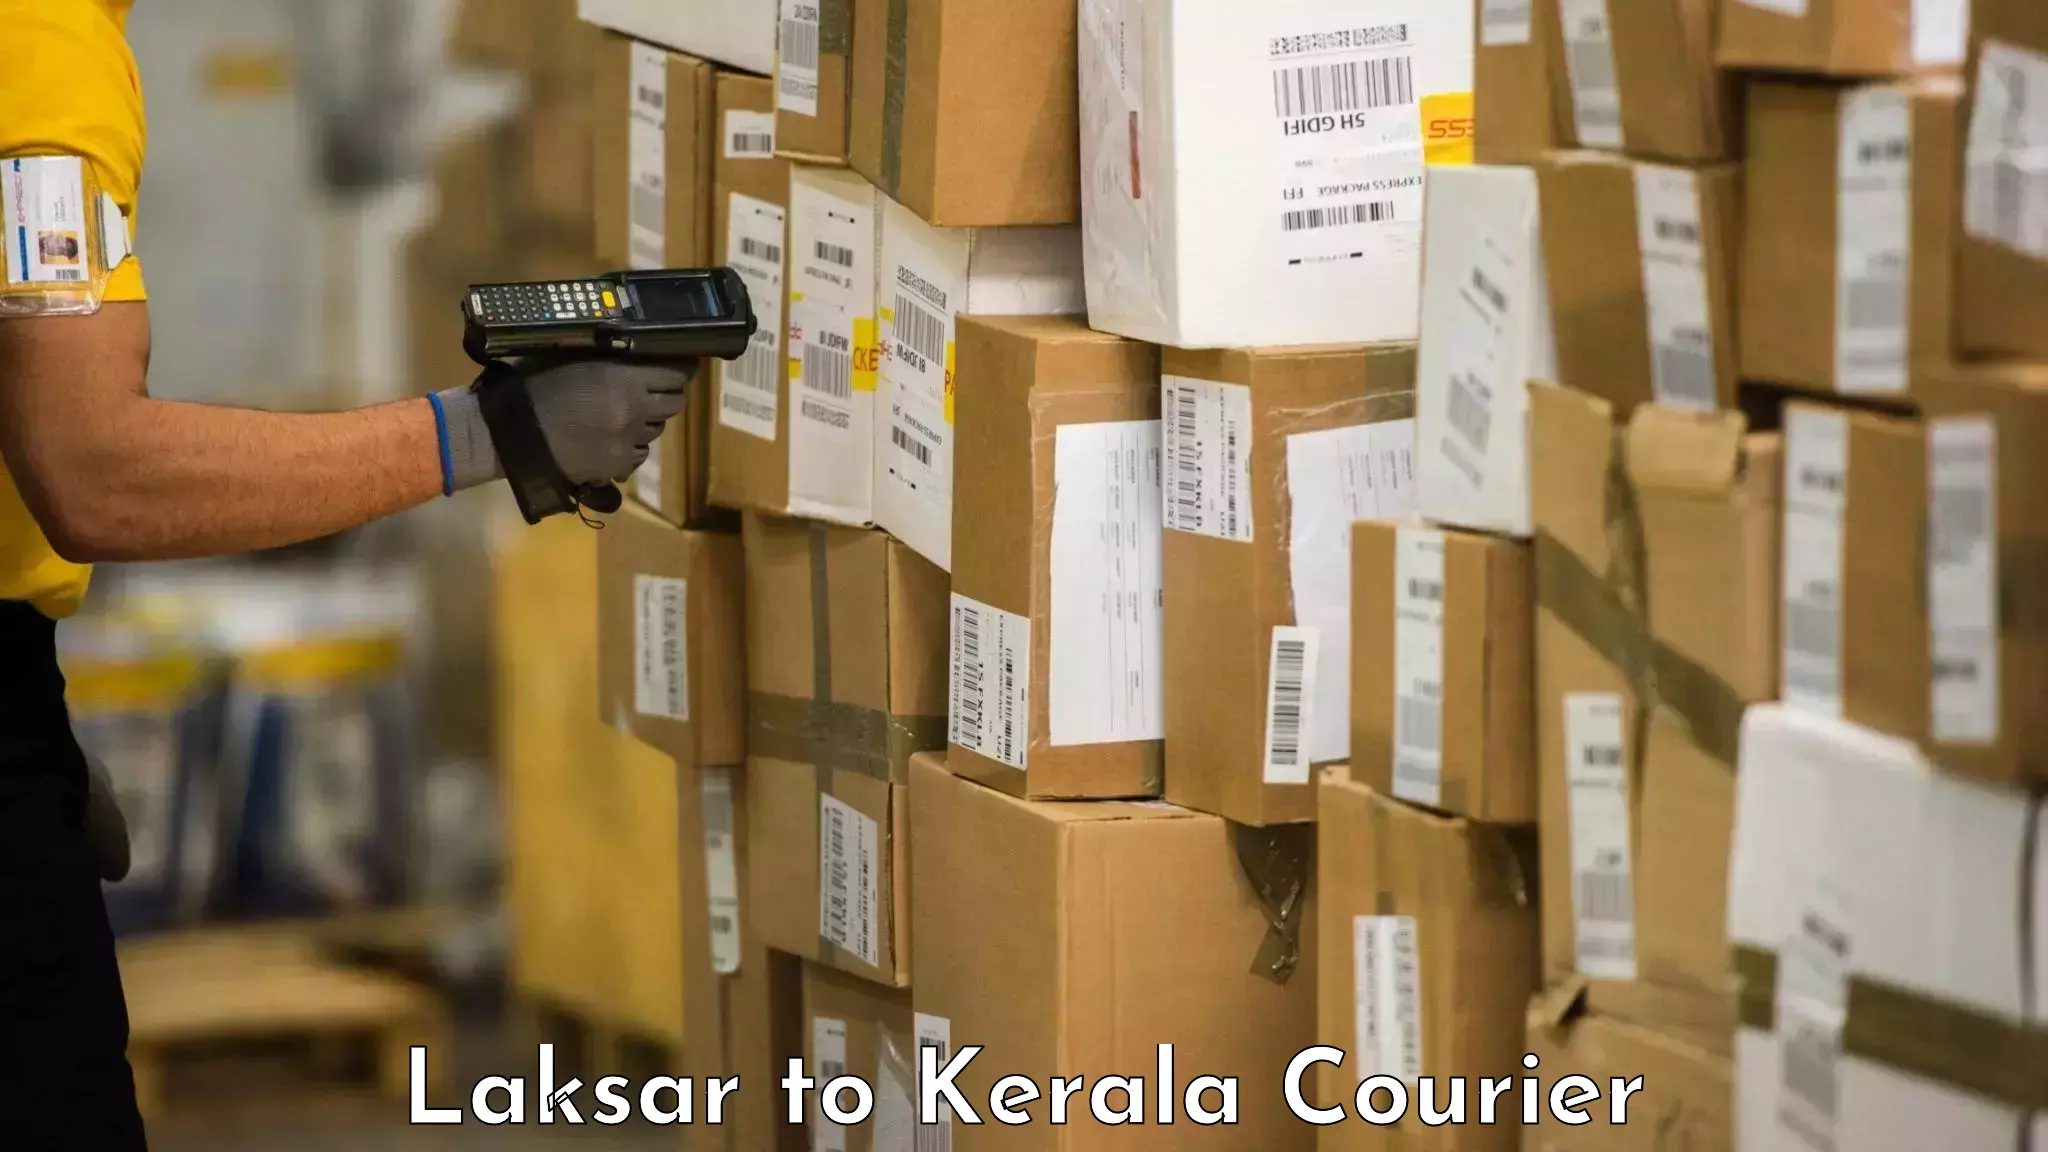 Luggage transport company Laksar to Kakkayam